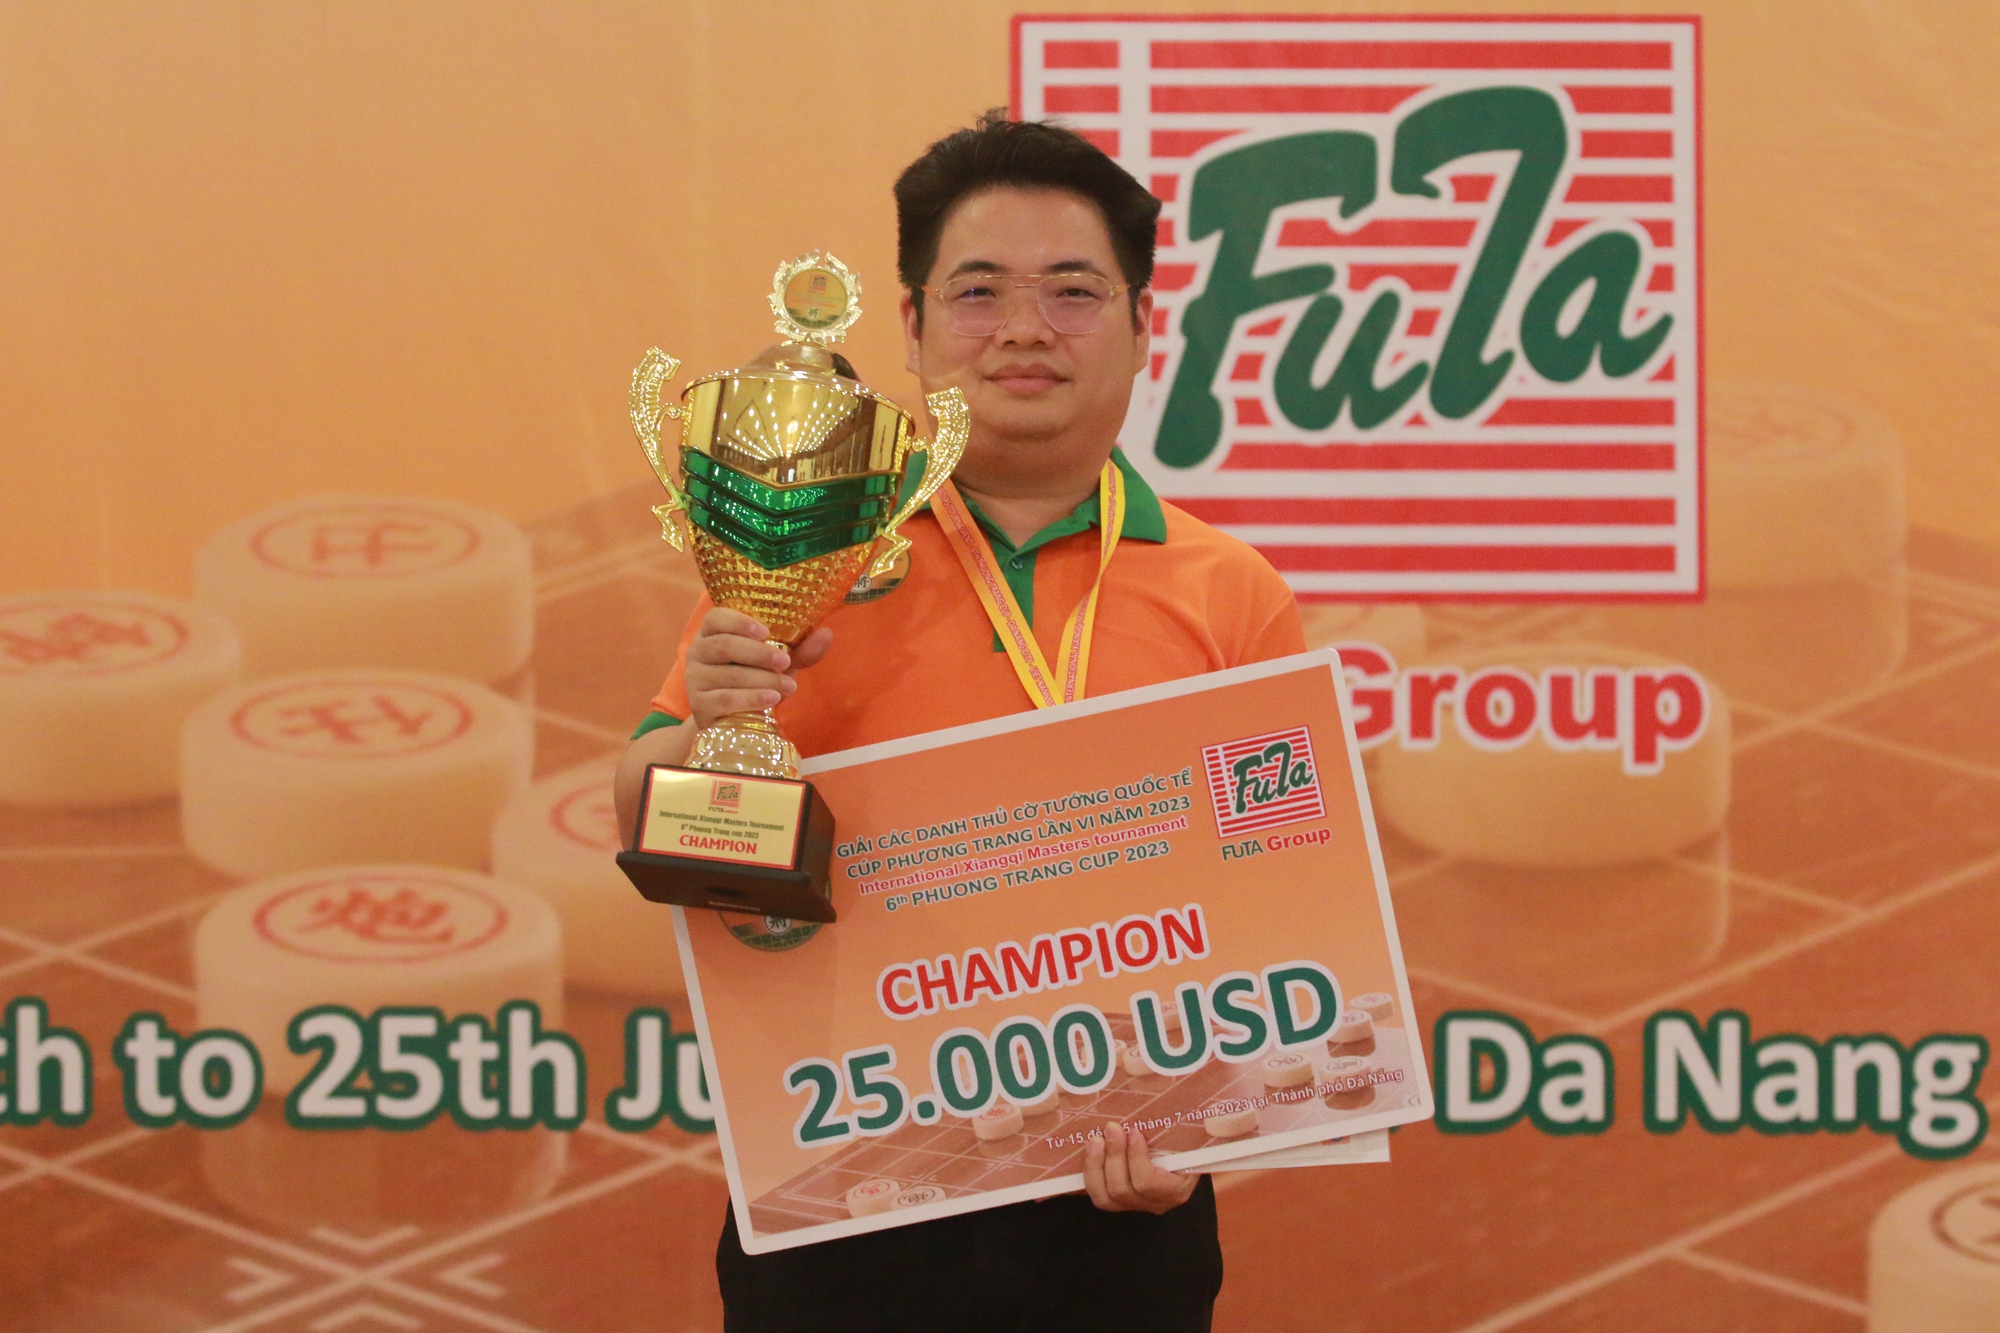 Kỳ vương Tưởng Xuyên lần thứ nhì đoạt cúp vô địch Phương Trang - Ảnh 7.